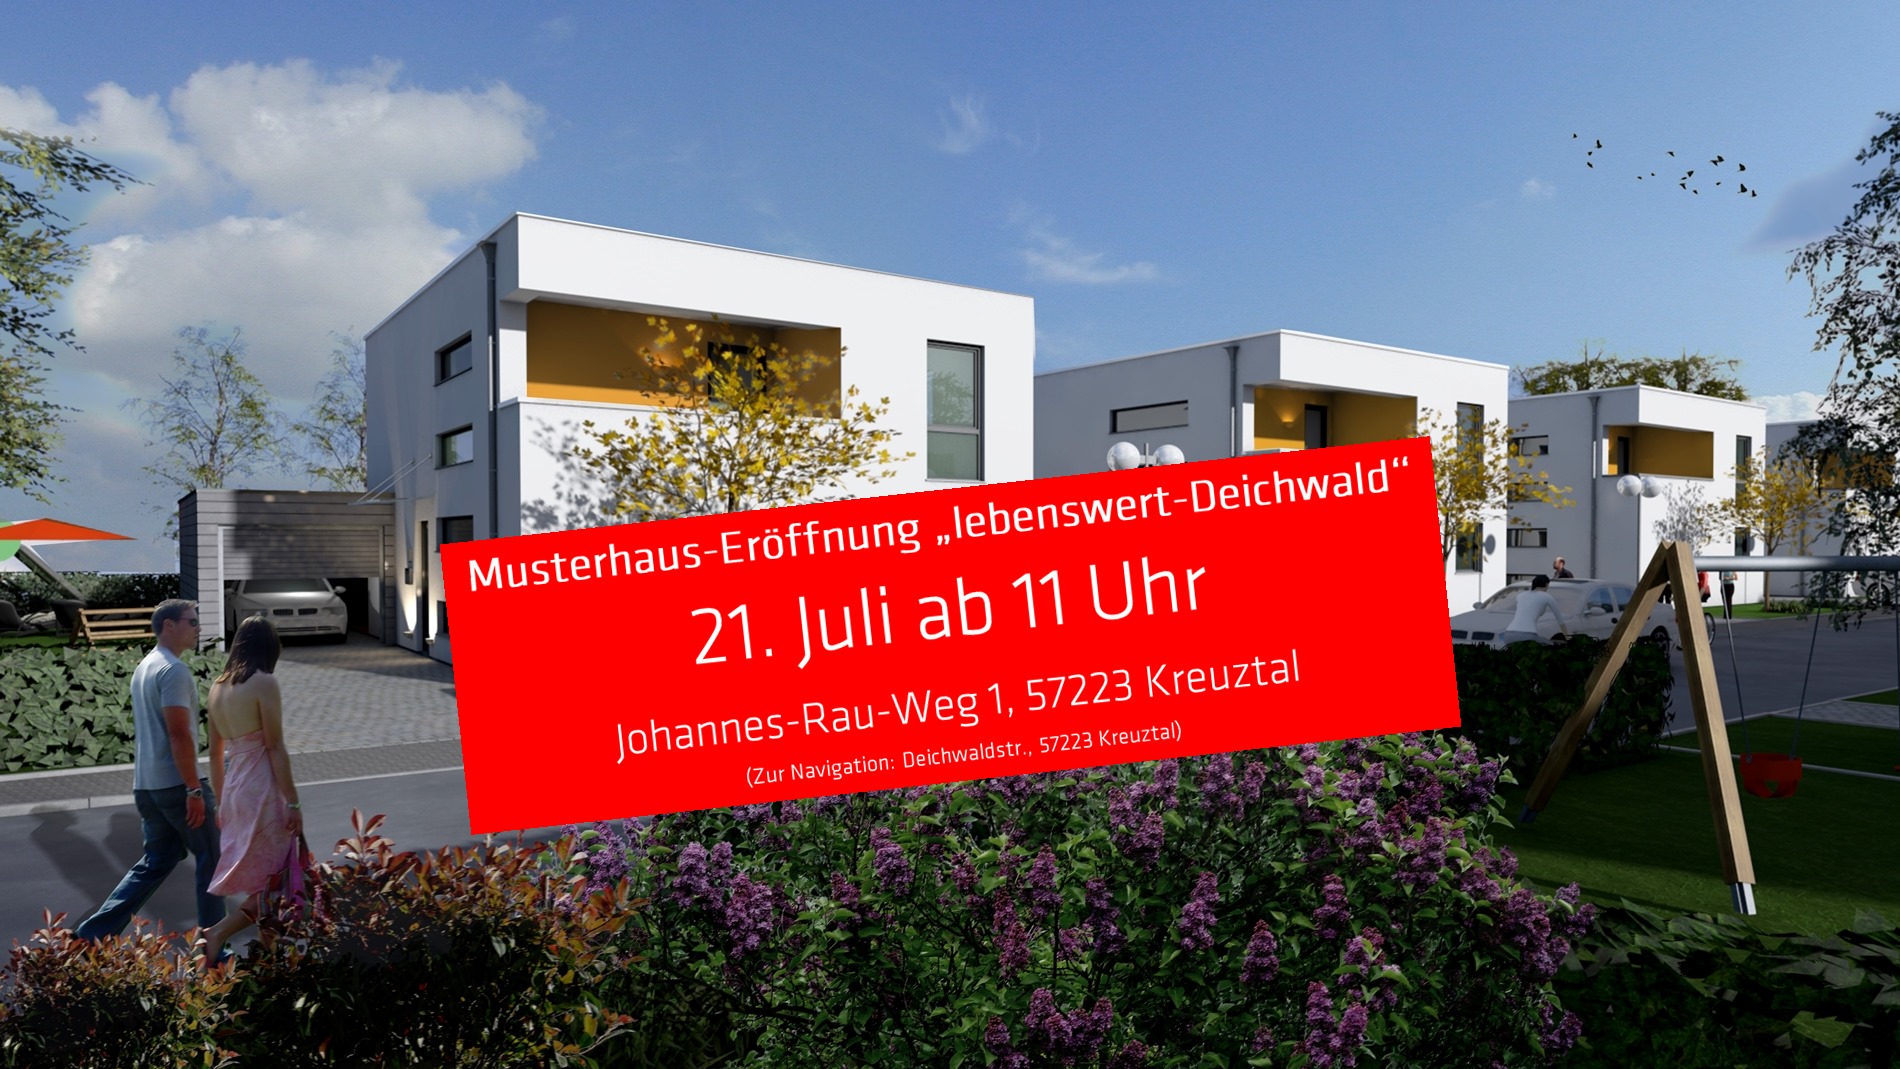 Du betrachtest gerade Eröffnung Musterhaus “Lebenswert-Deichwald” am 21. Juli 2018